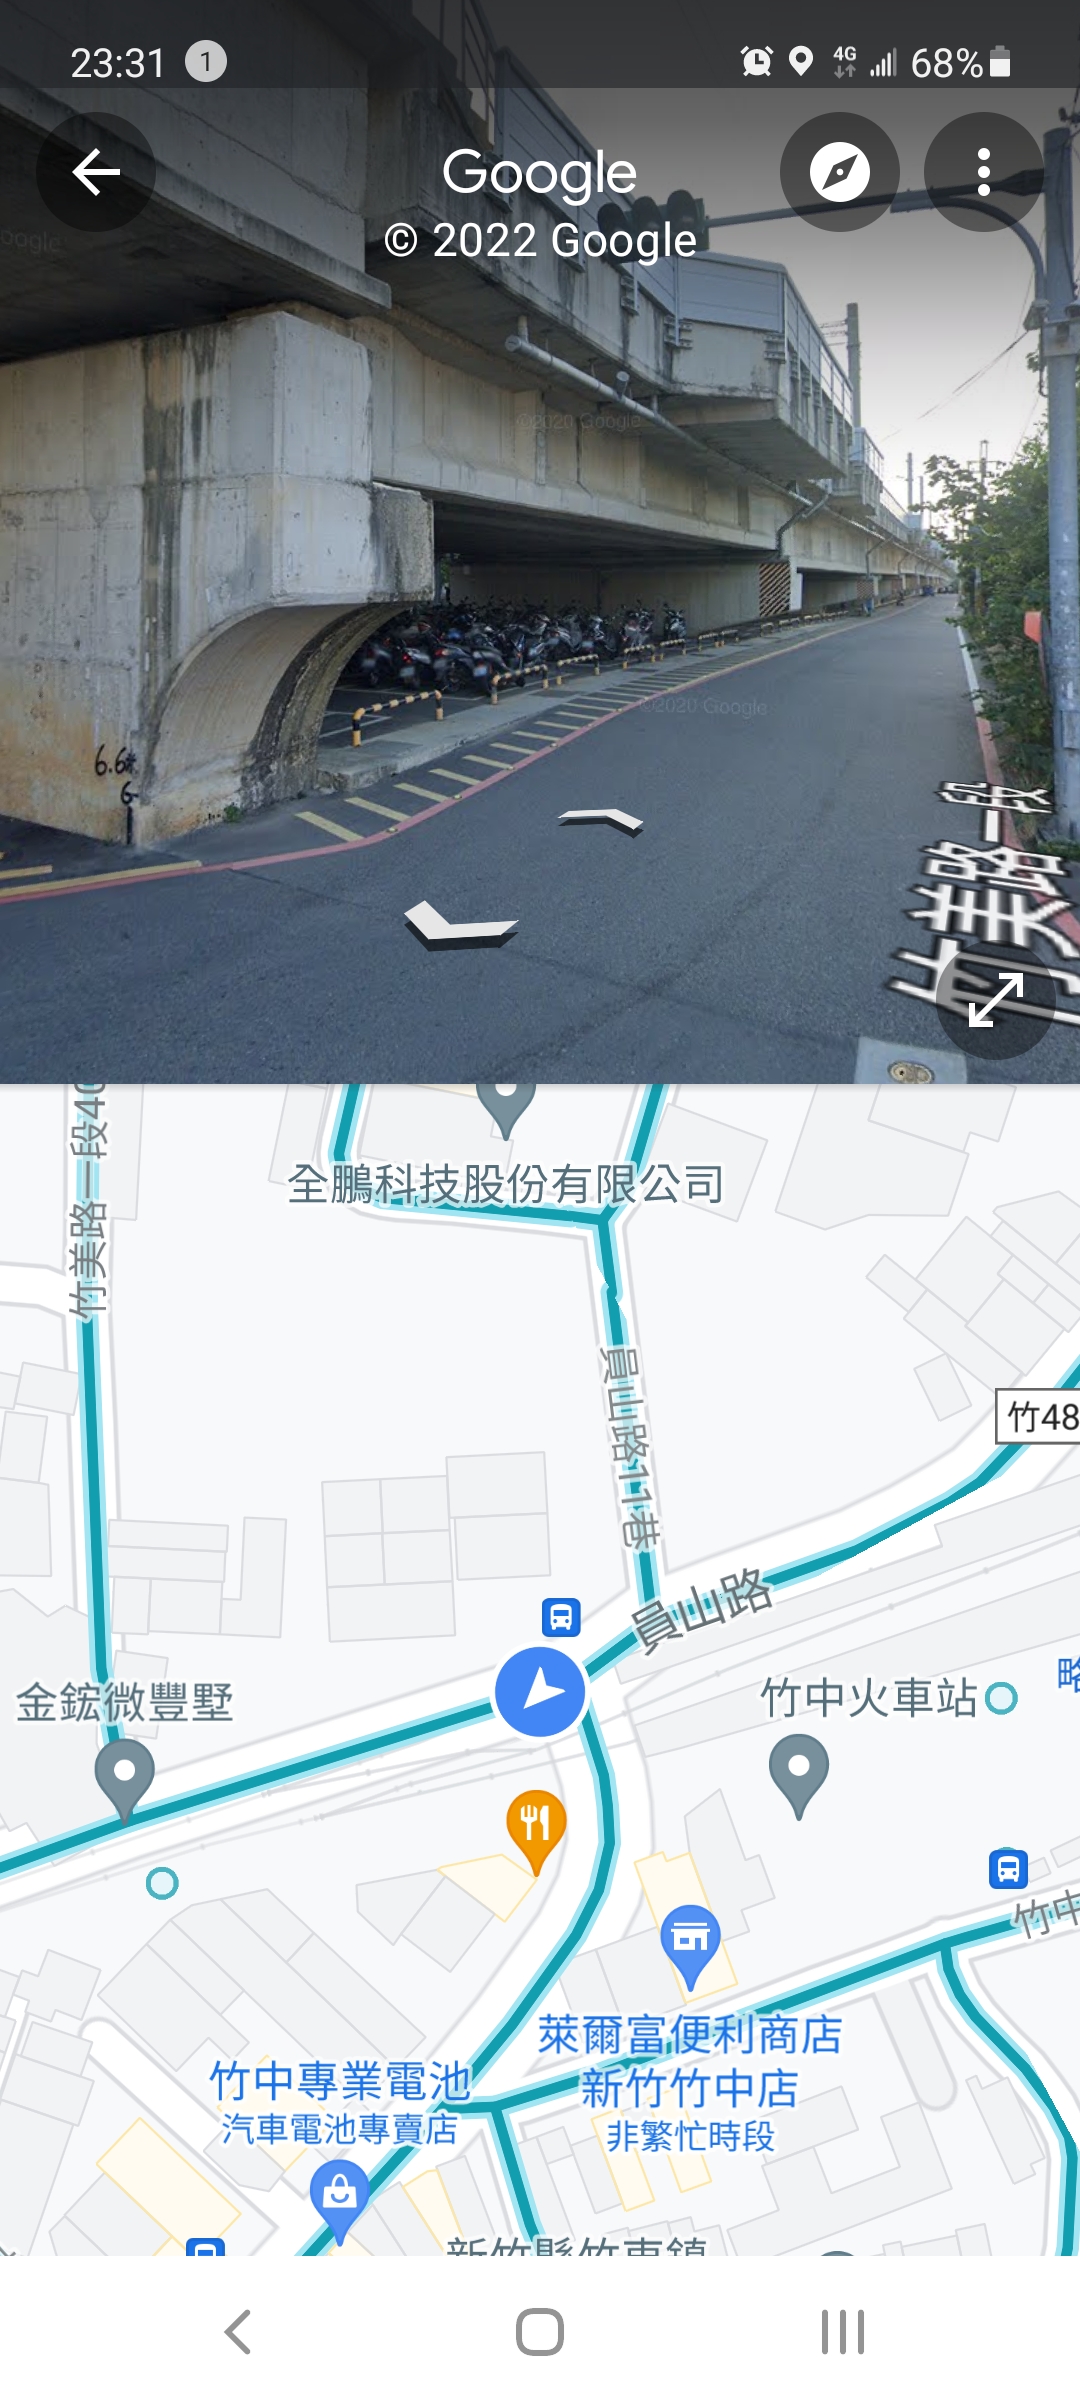 [問題] 竹中火車站附近有機車停車位嗎？